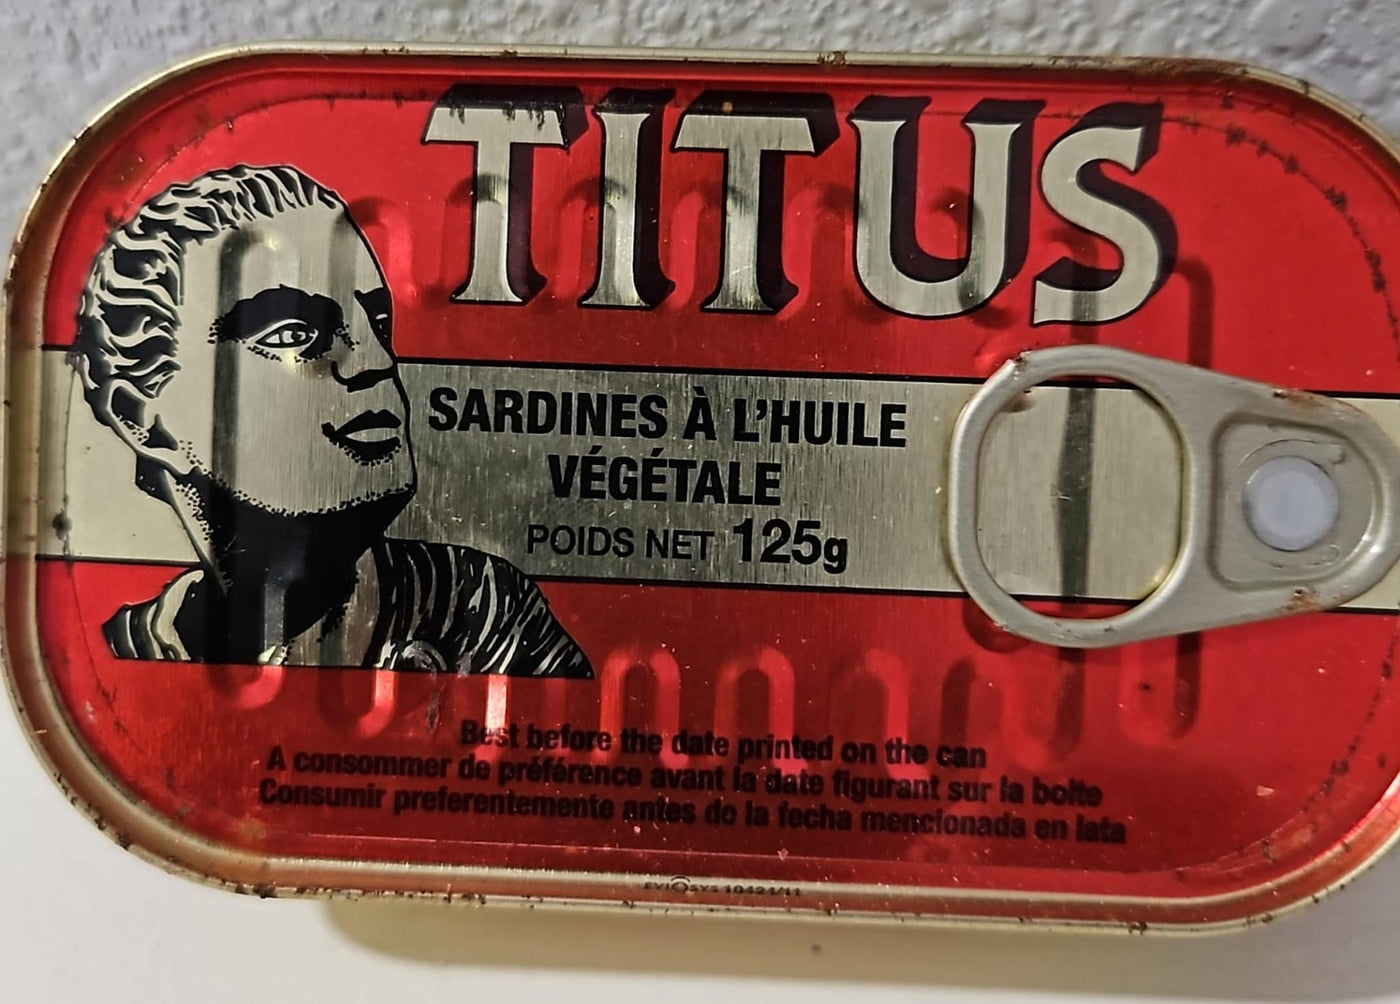 Titus Sardine